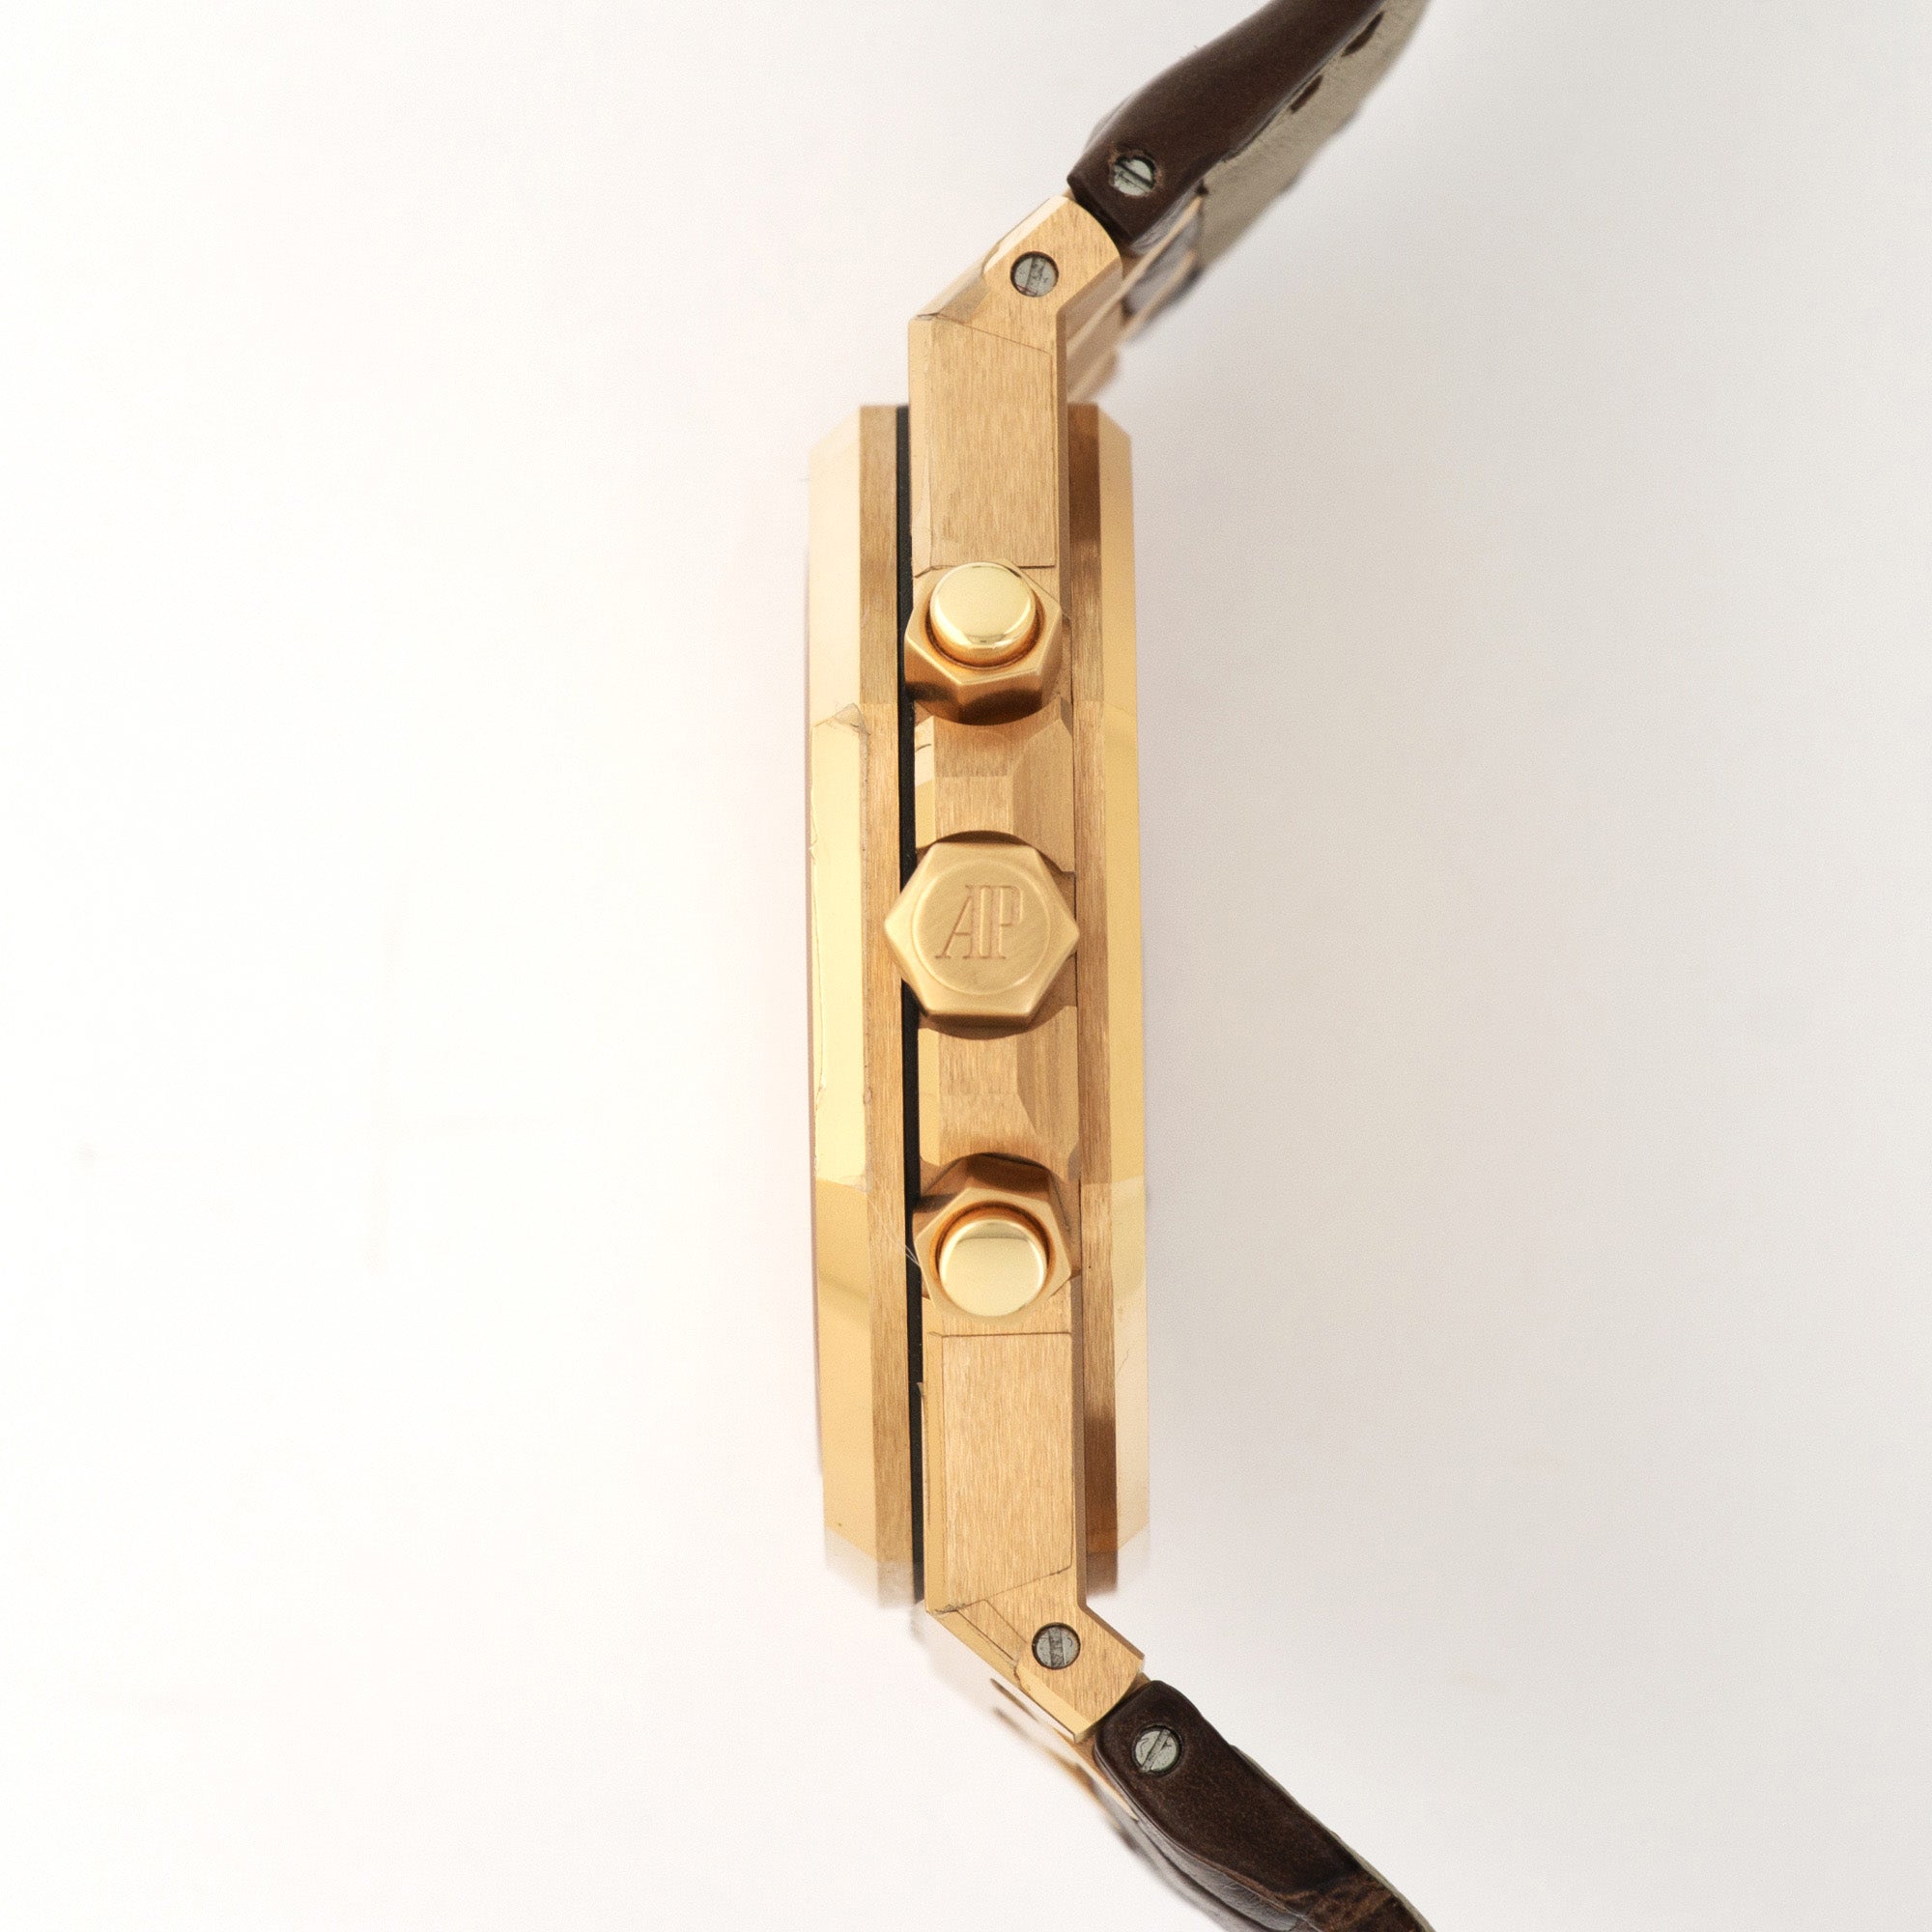 Audemars Piguet - Audemars Piguet Rose Gold Royal Oak Chronograph Watch Ref. 26320 - The Keystone Watches